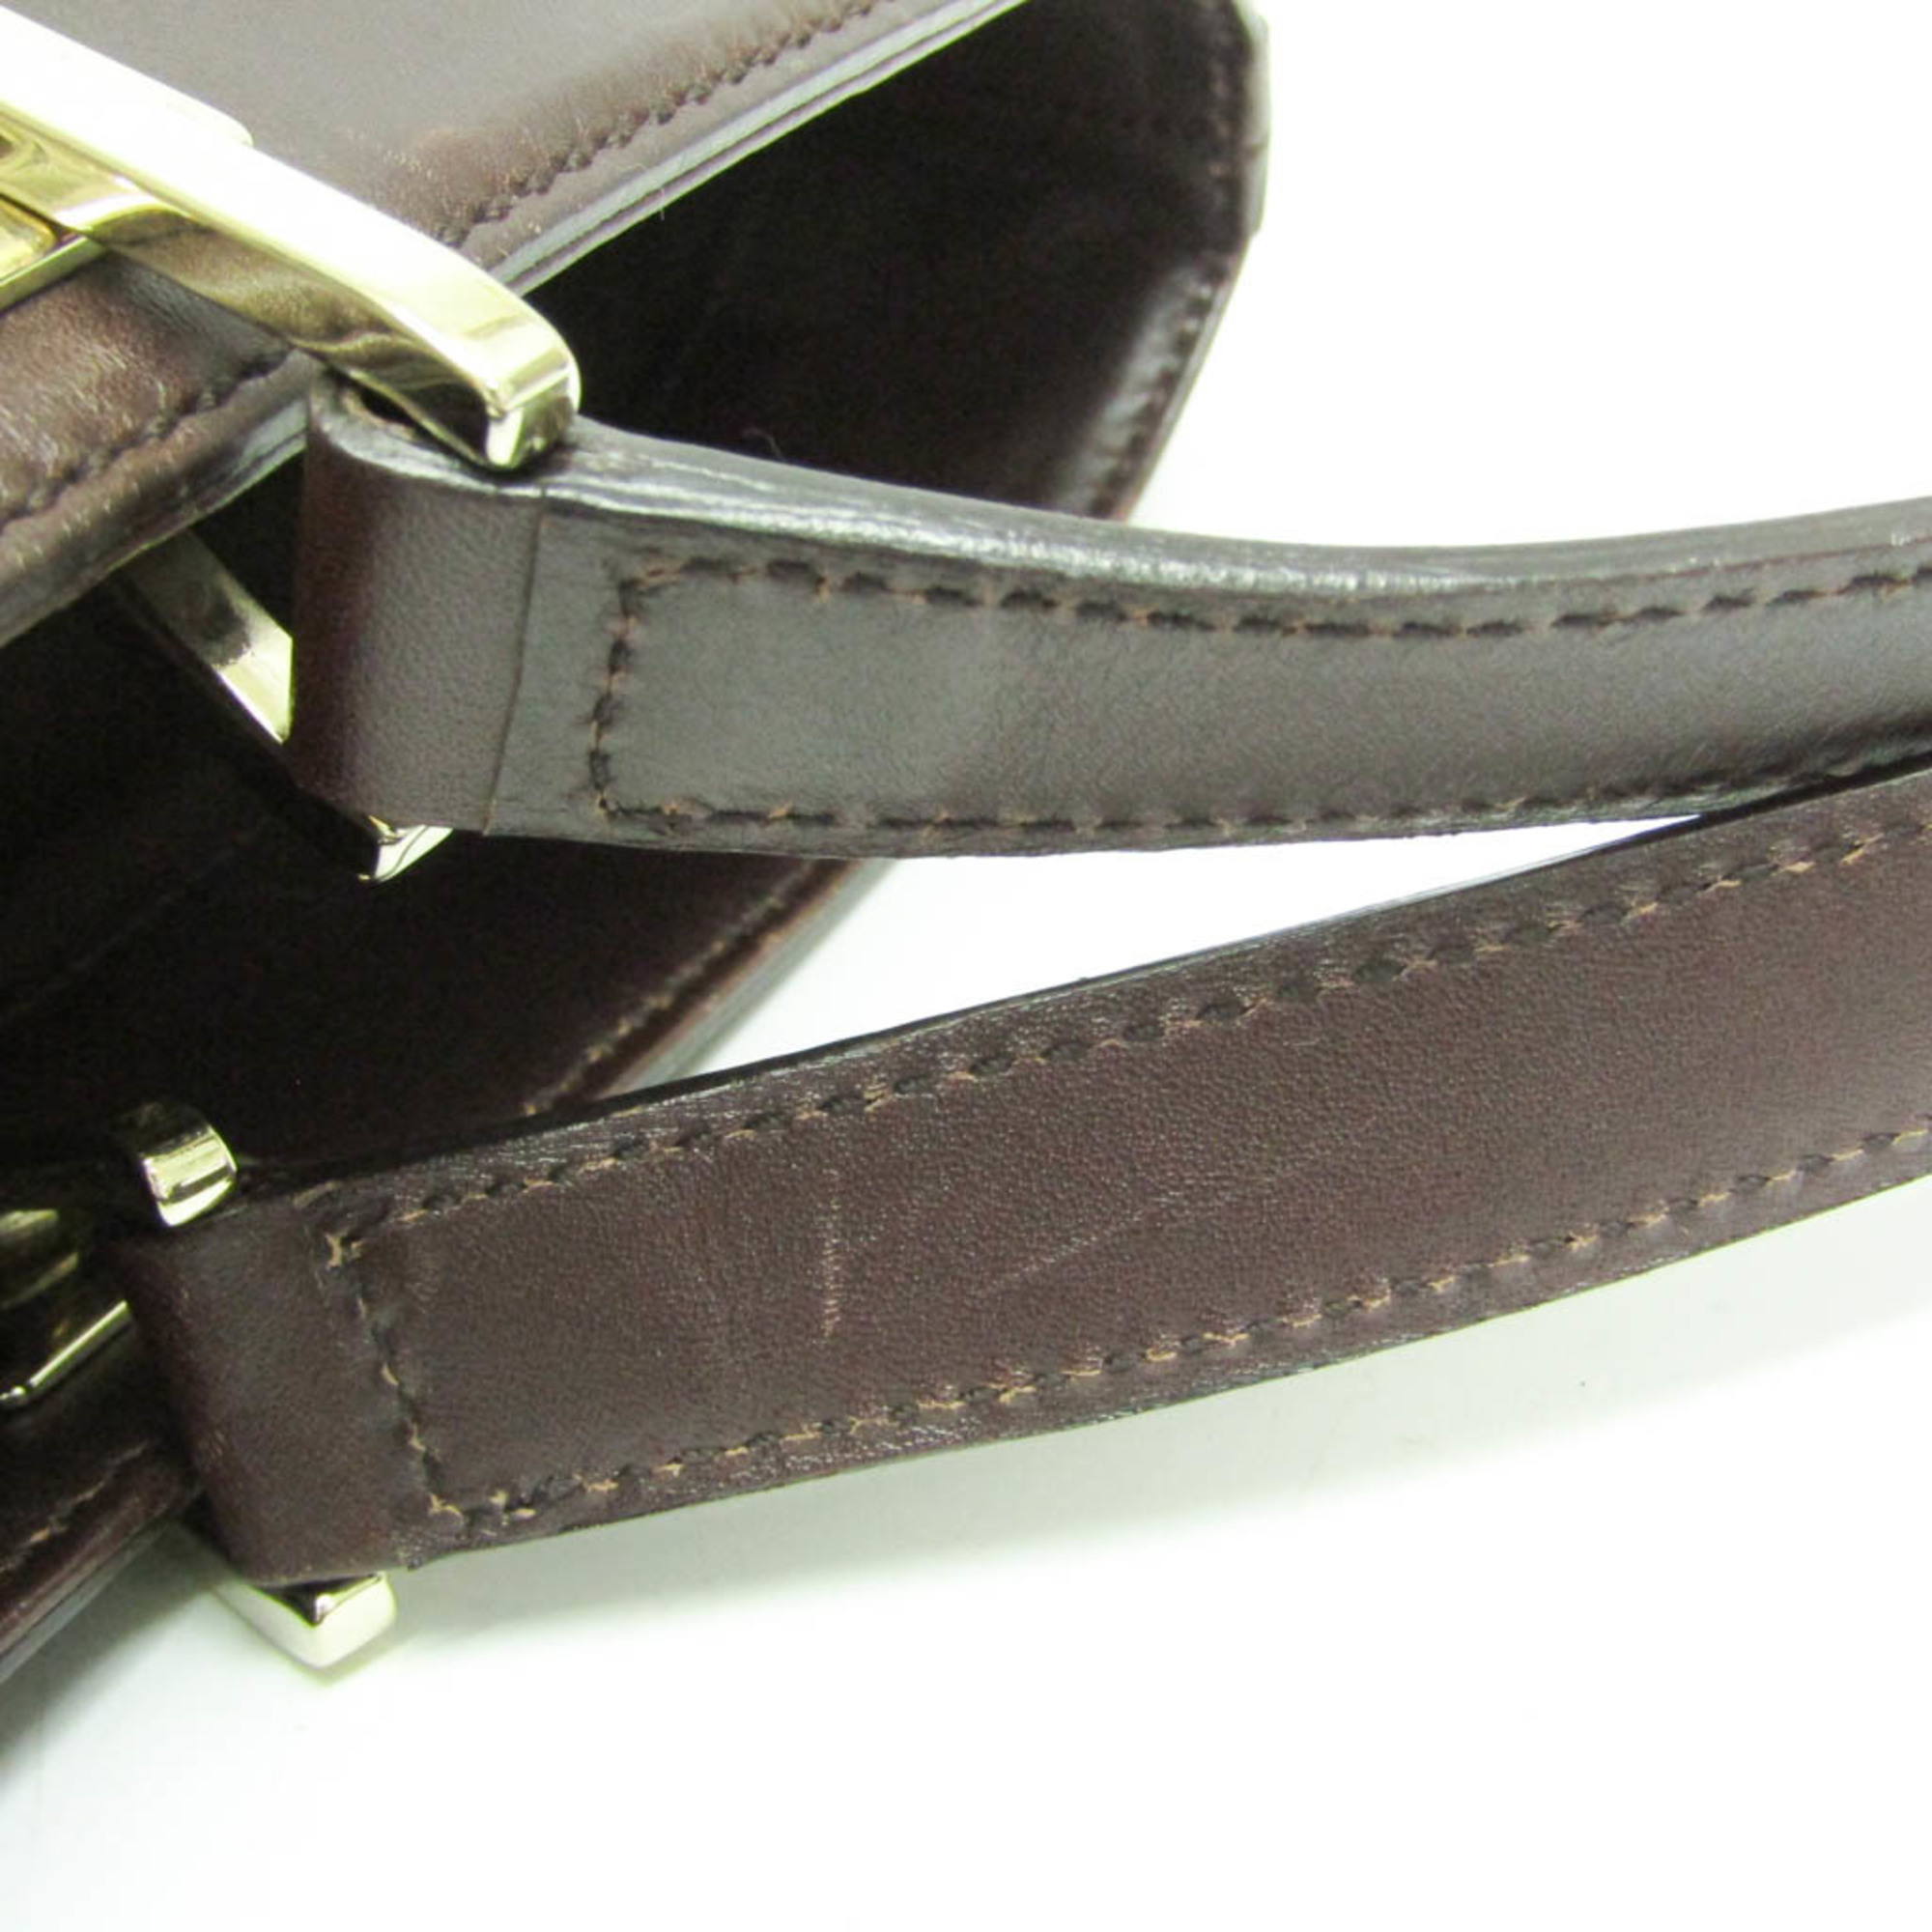 Gucci Guccissima 145993 Women's Leather Tote Bag Dark Brown